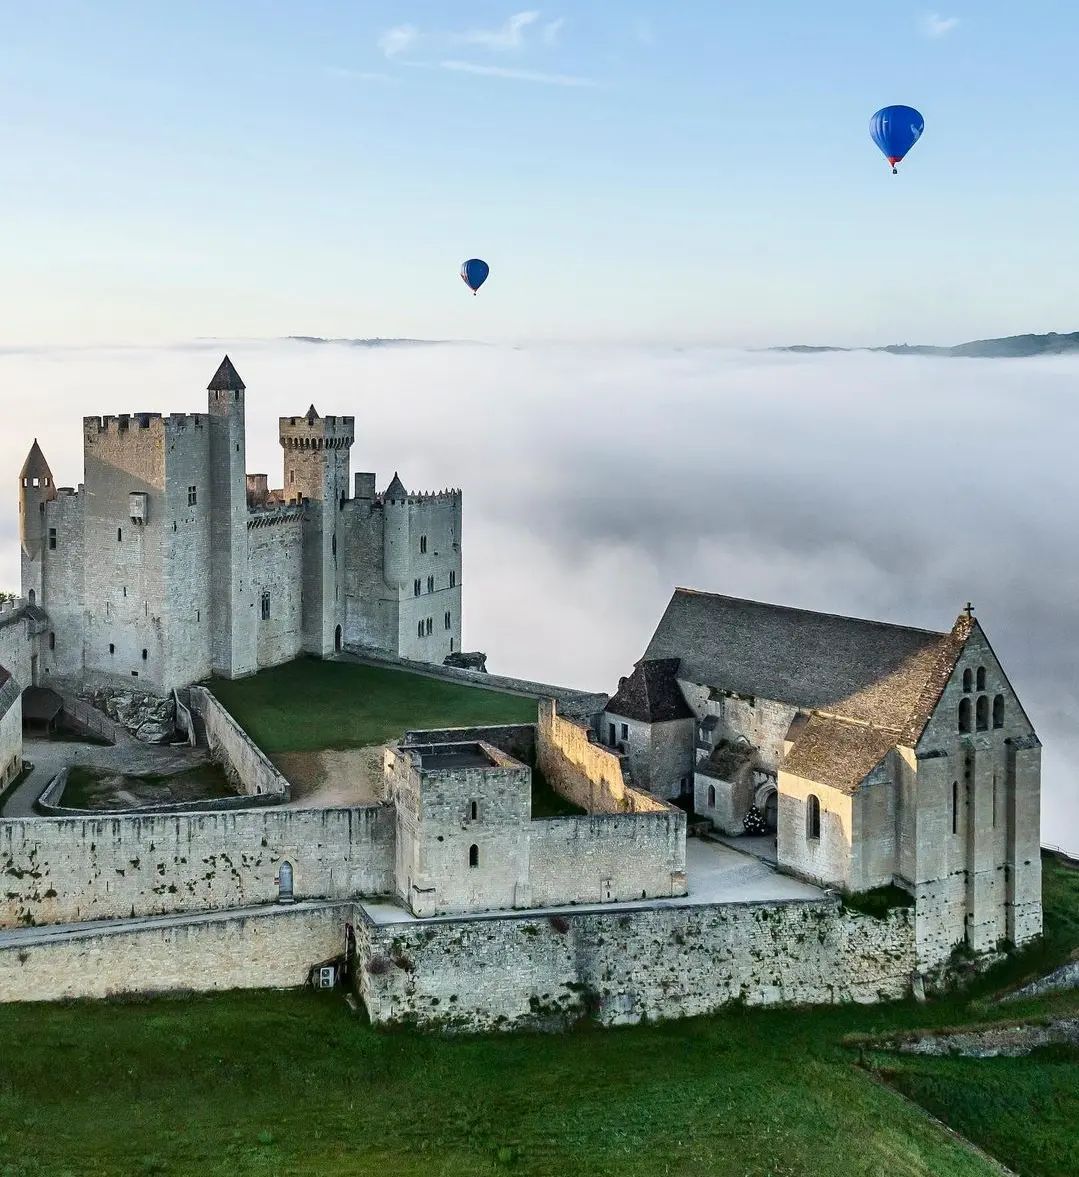 Découvrez le château fort le plus authentique du Périgord ! C’est le Château de Beynac dressé depuis 1115 sur son piton rocheux dominant la Dordogne 🏰 👉🏻 L’avez-vous déjà visité ? 📸@‌declic_et_decolle #MALC #france3 @FranceTV @SO_Dordogne @cddordogne @NvelleAquitaine